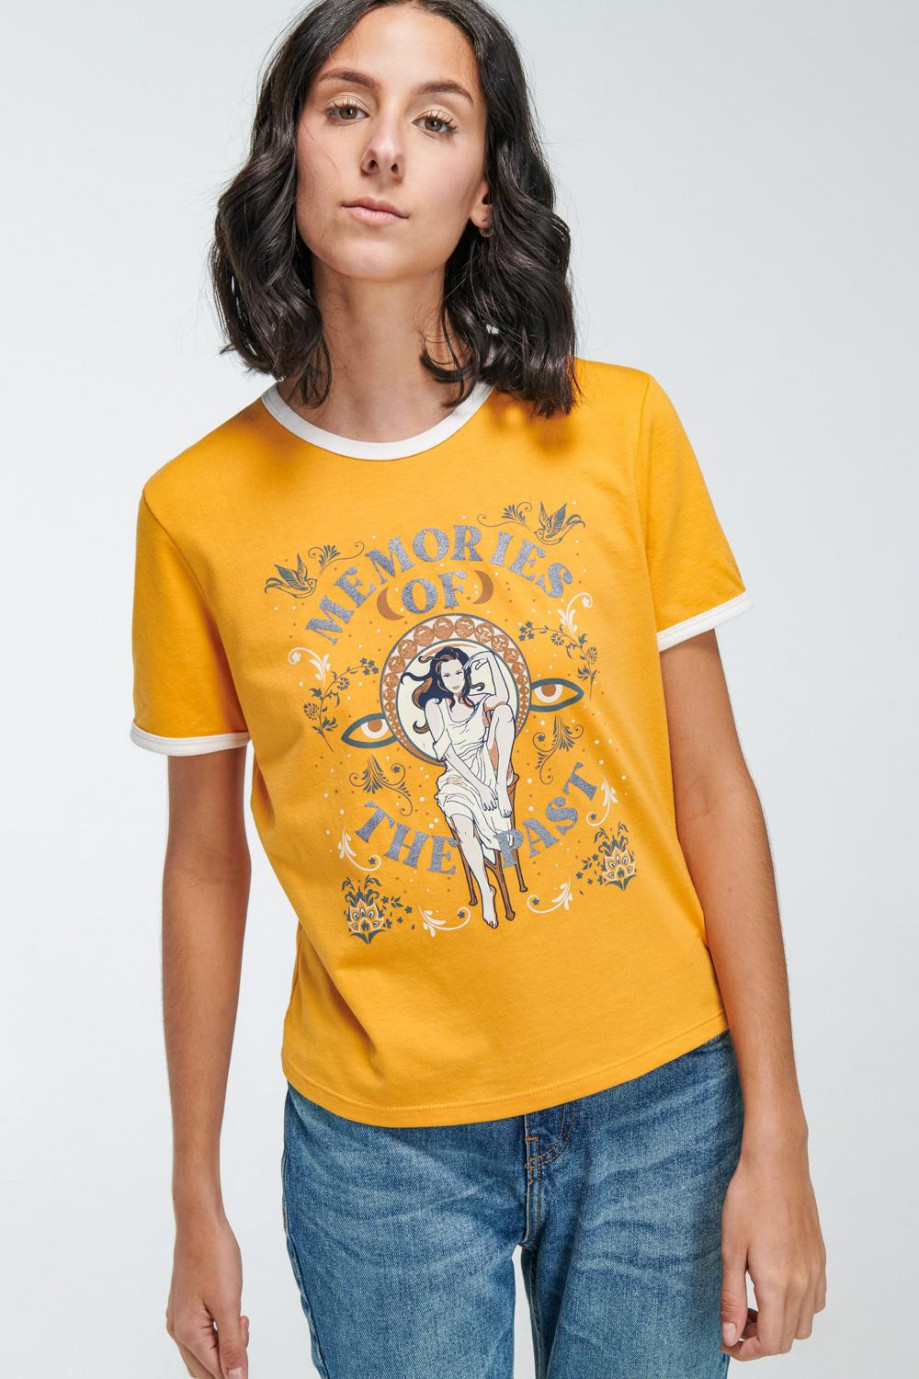 Camiseta unicolor manga corta con estampado y contrastes